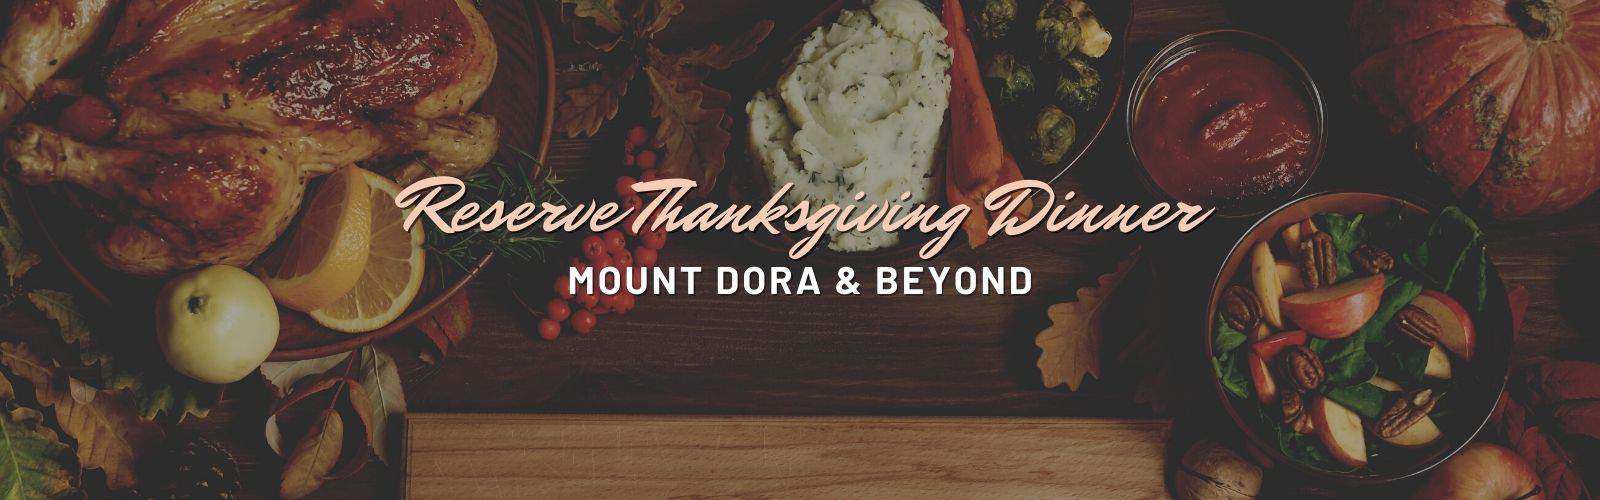 Reserve Thanksgiving Dinner in Mount Dora